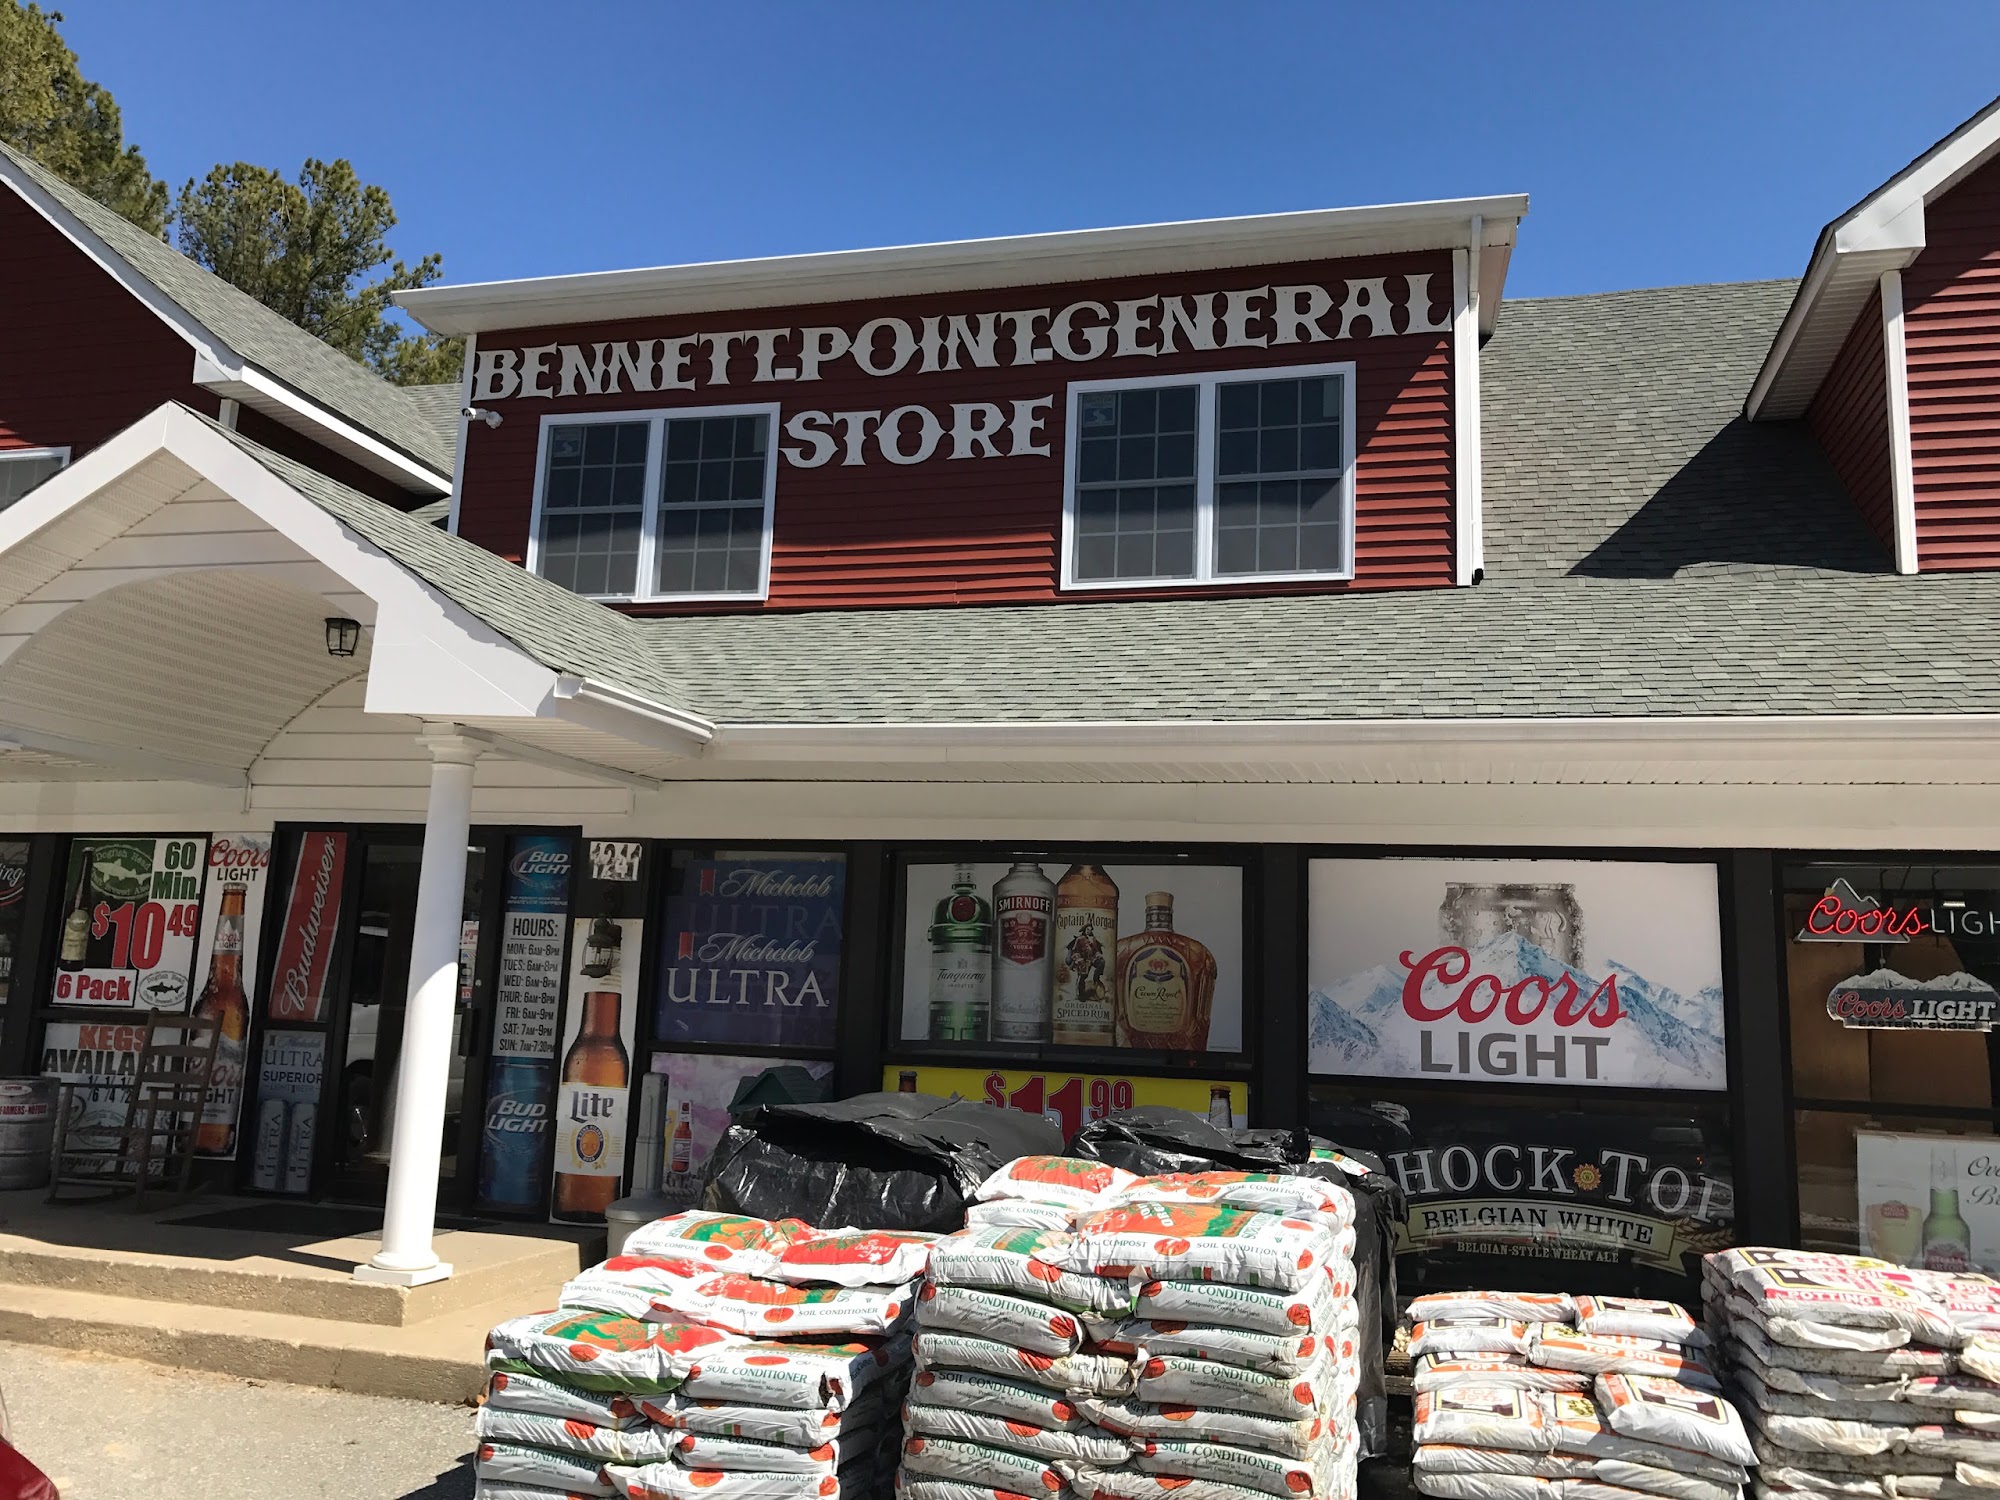 Bennett Point General Store & Deli